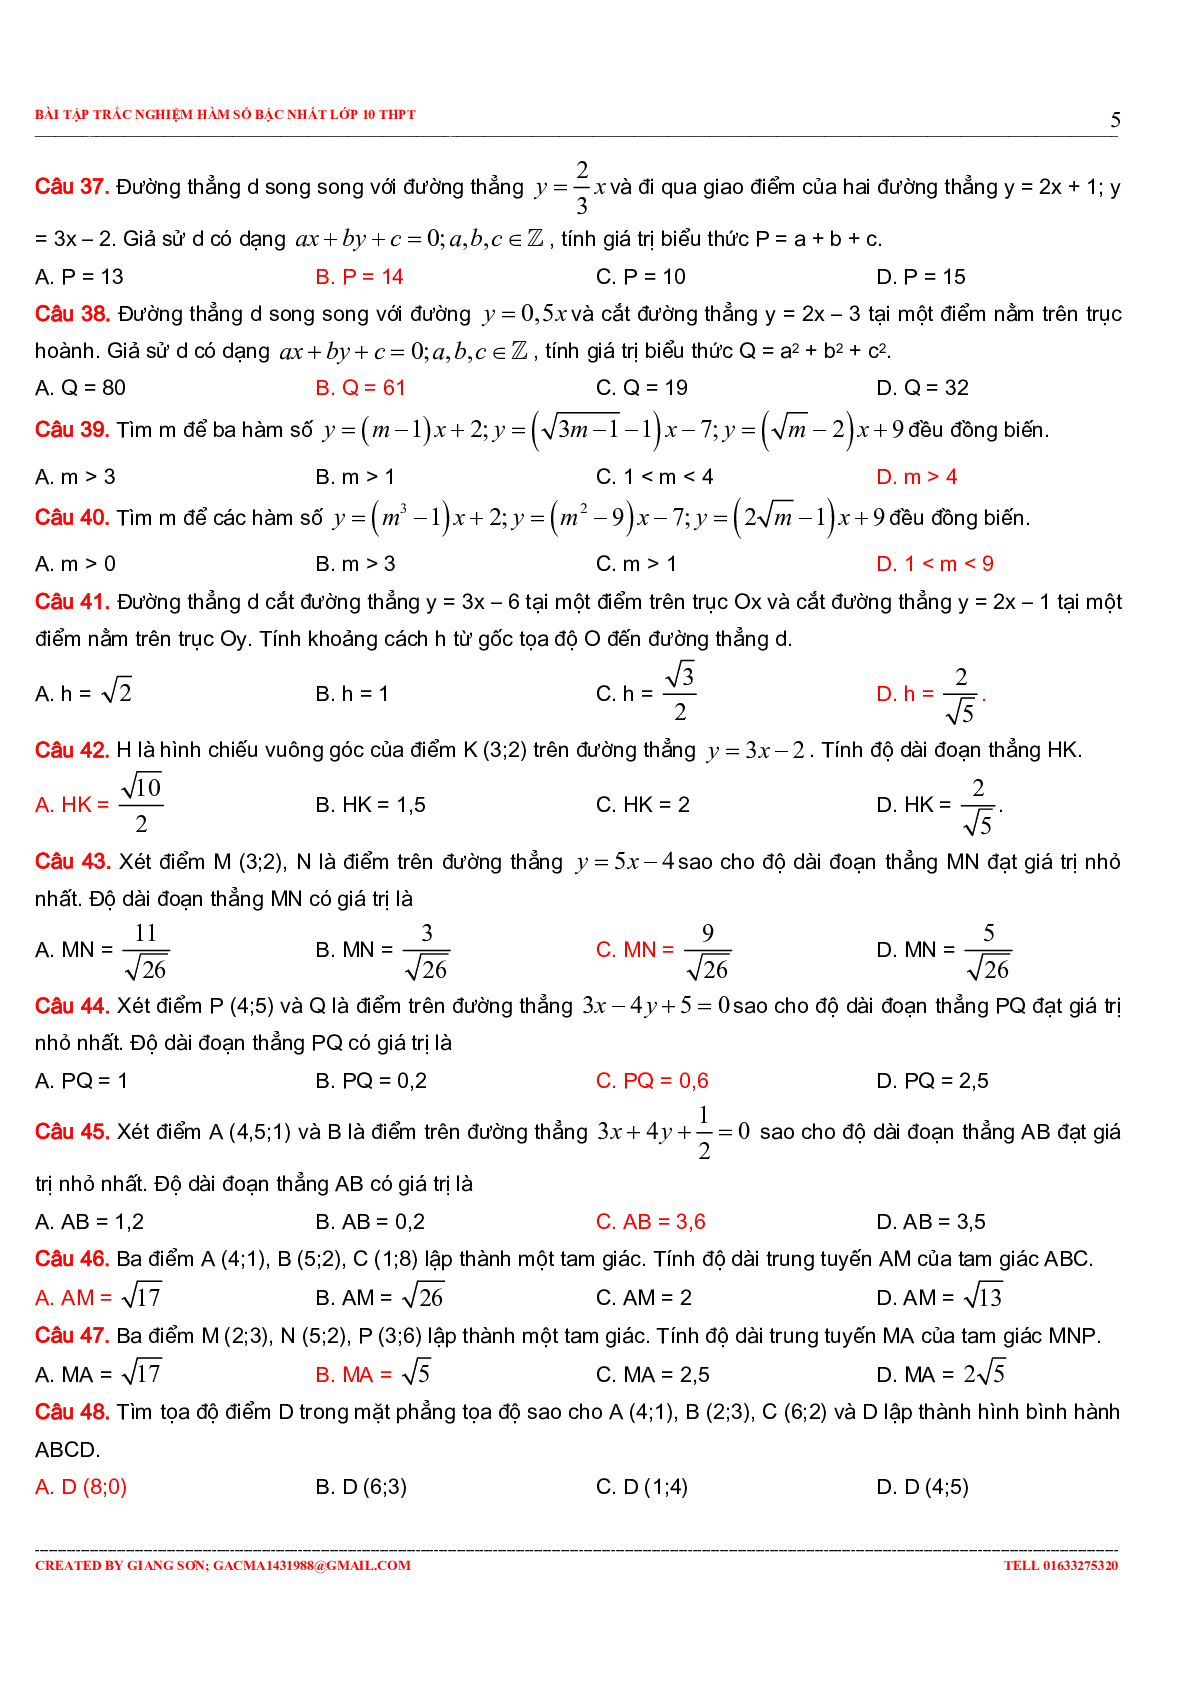 229 bài tập trắc nghiệm hàm số bậc nhất (trang 5)